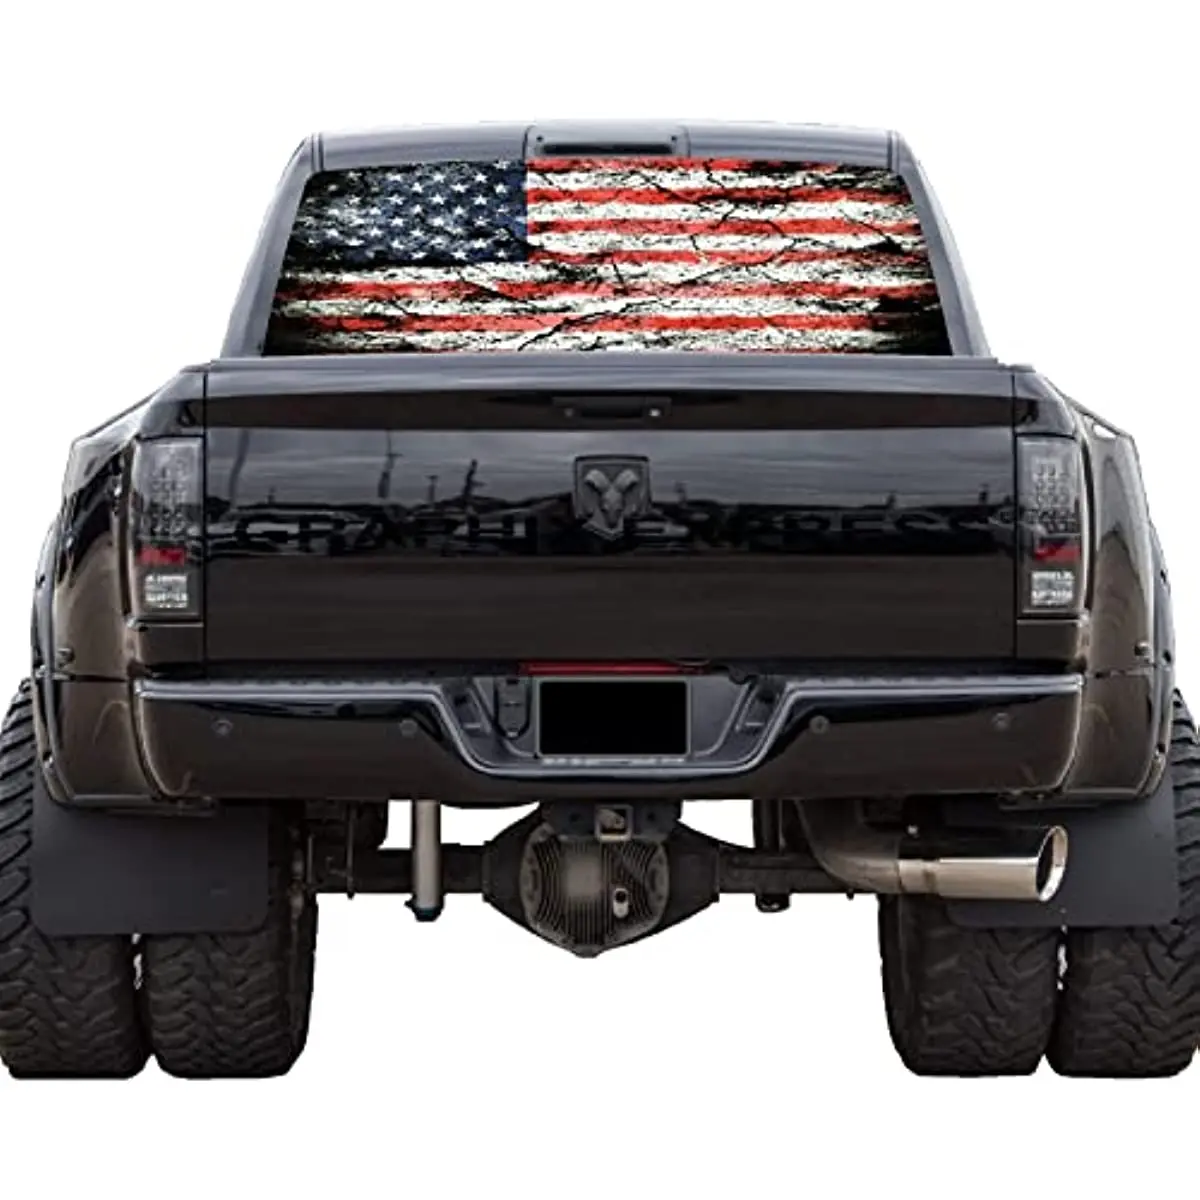 GRAPHIX EXPRESS Tovornjak Nazaj Okno Grafike - Ameriške Zastave, Nalepke (P530) - Patriotske Rdeče, Belo in Modro Zastavo ZDA - Univerzalni Se